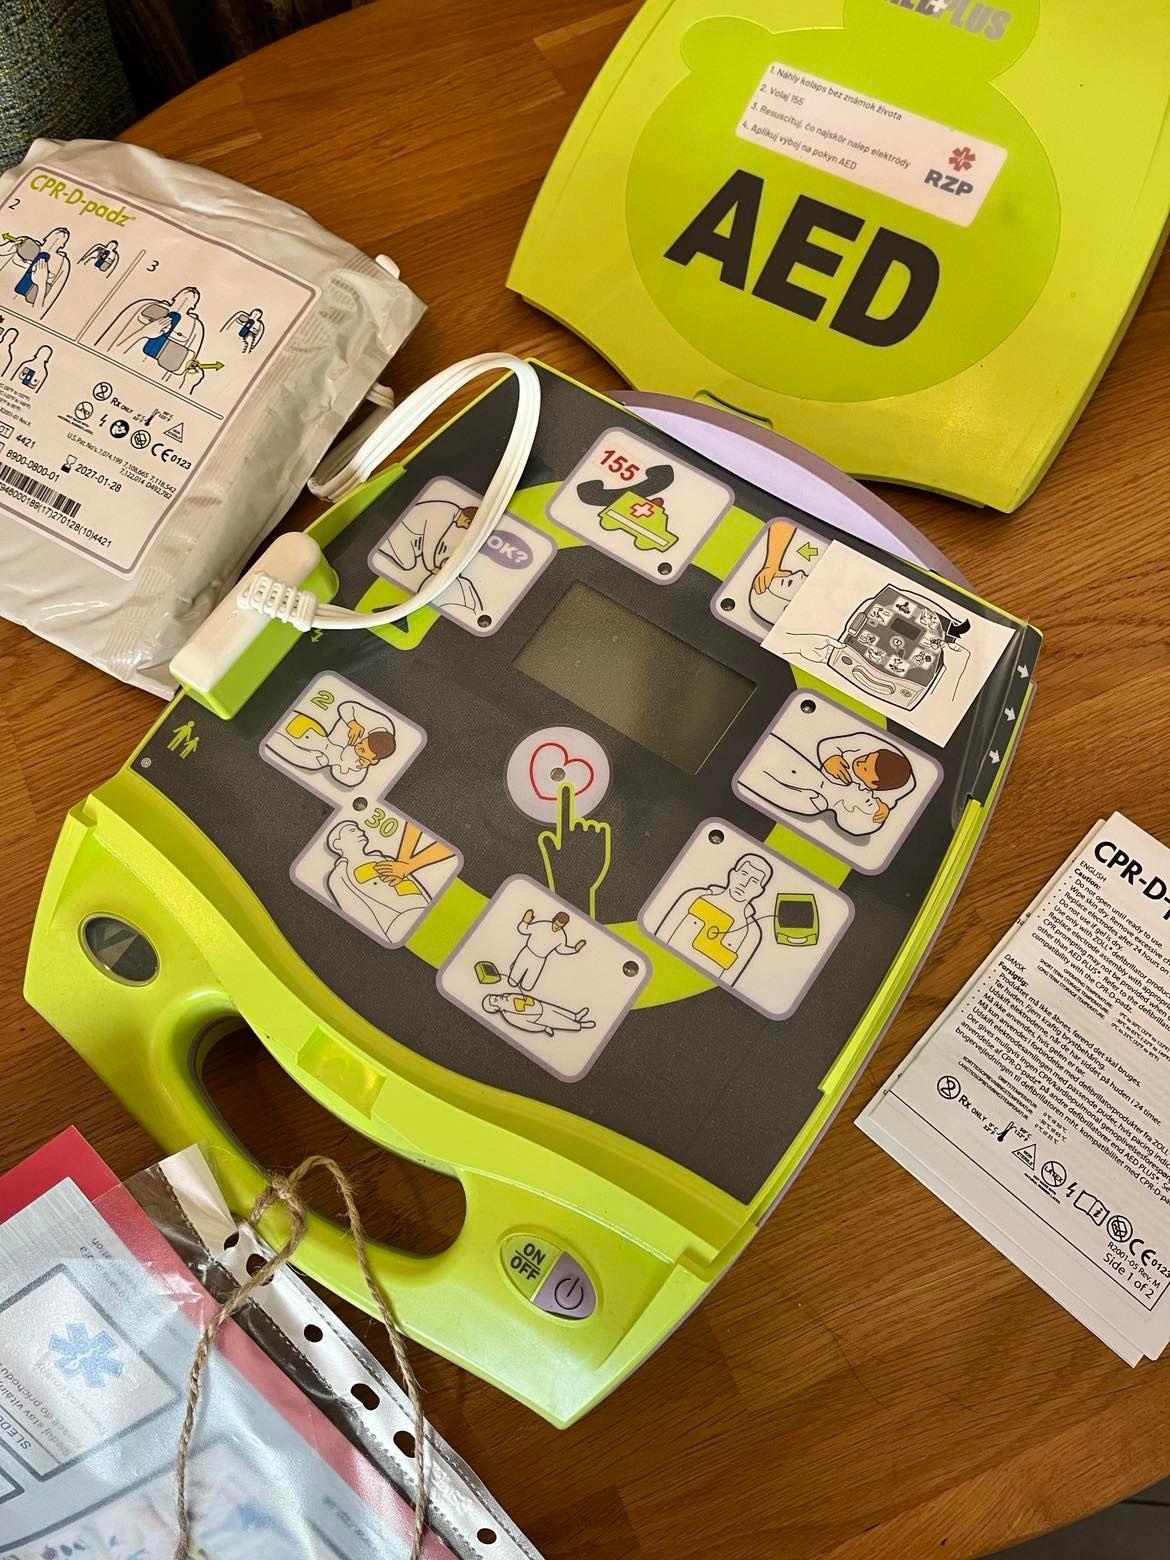 AED prístroj- defibrilátor - je umiestnený aj v centre Vajnor